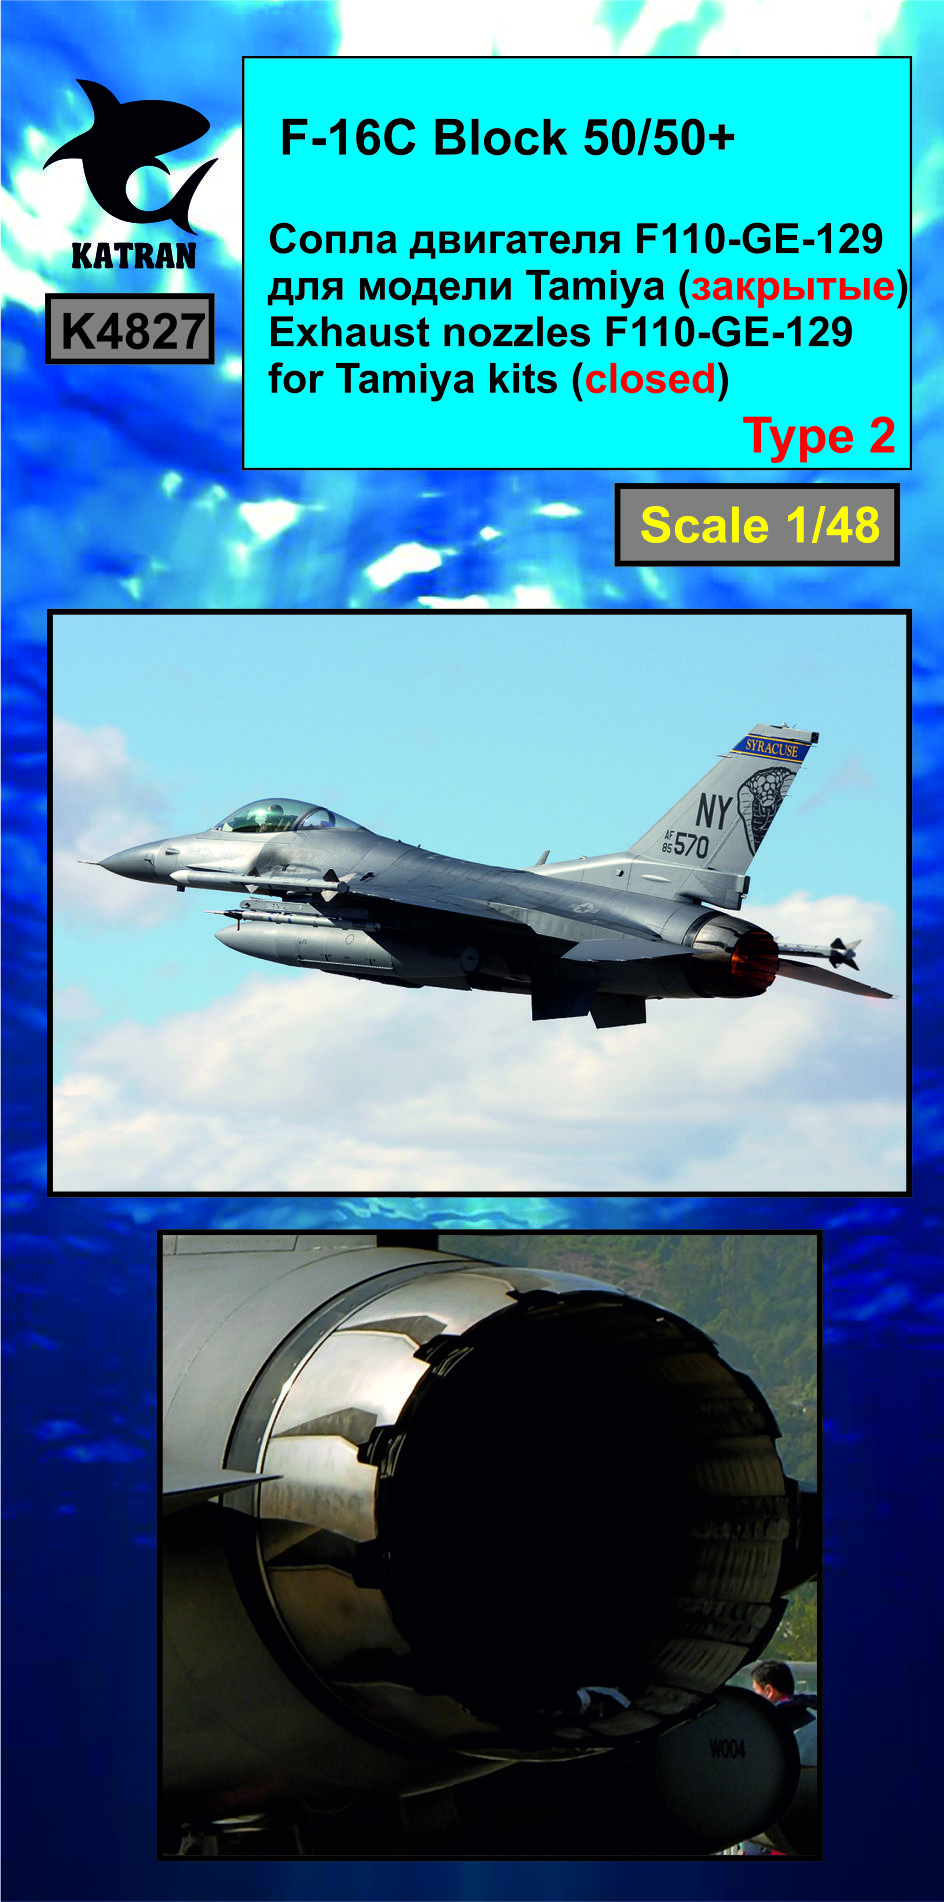 Дополнения из смолы 1/48 F-16C Block 50/50+ Viper сопла двигателя F-110-GE-129 (closed) (Katran) 